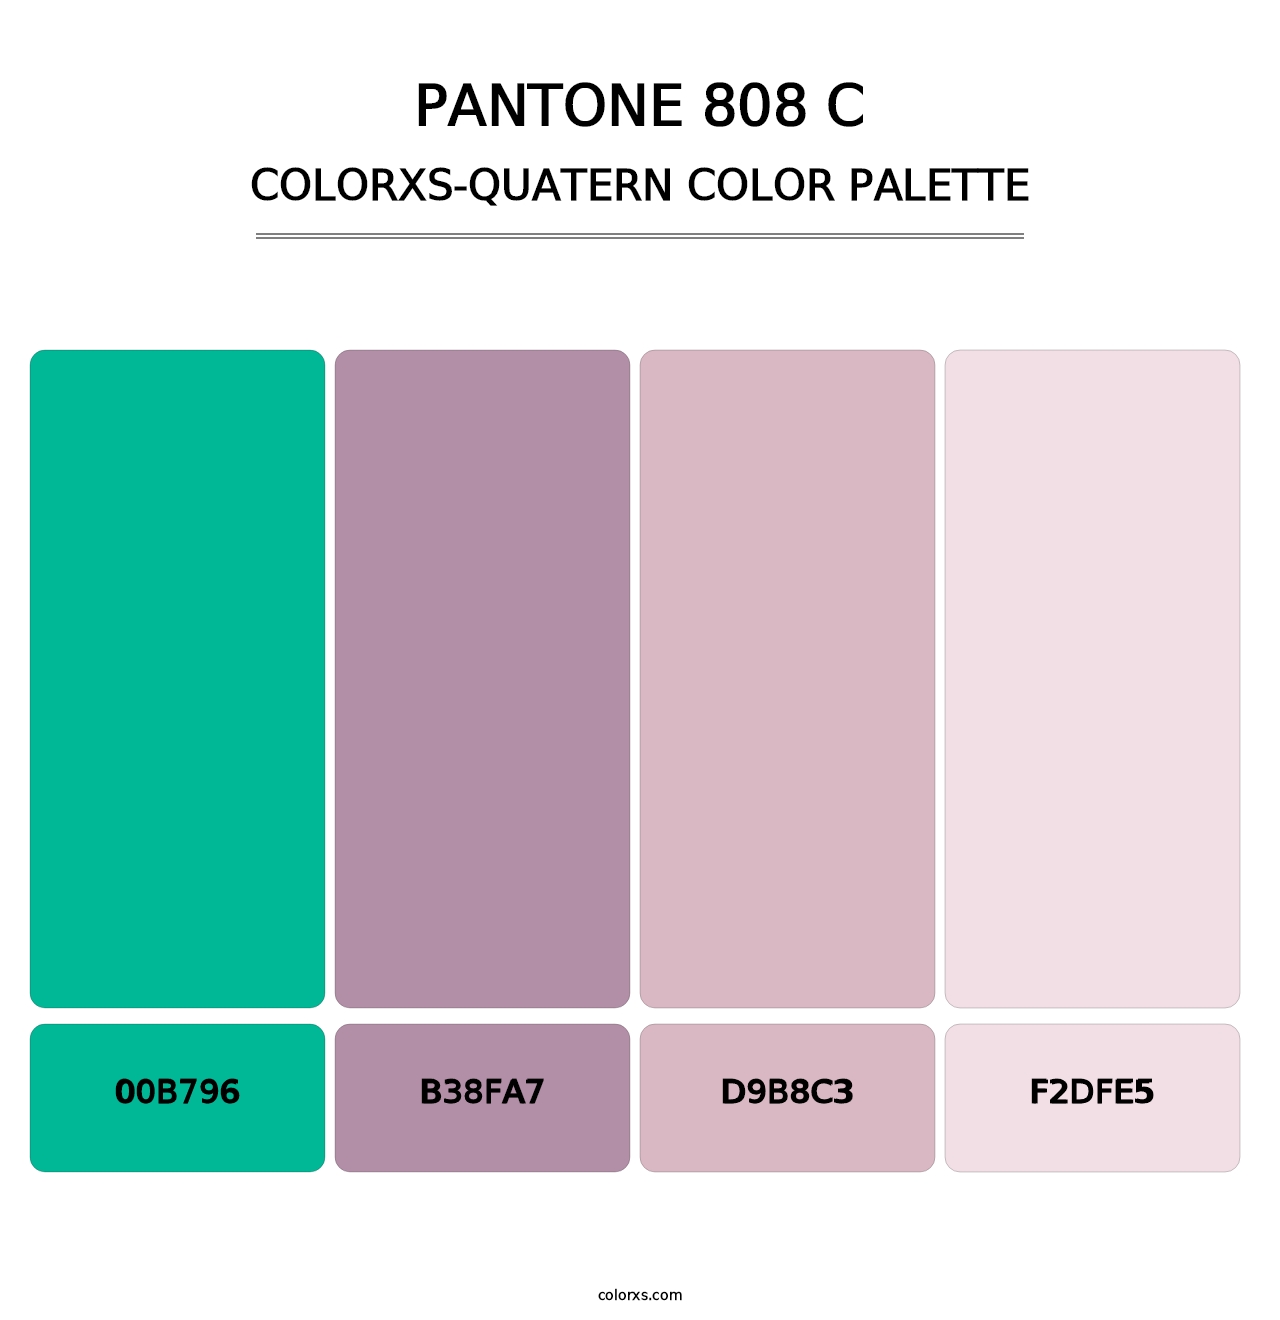 PANTONE 808 C - Colorxs Quatern Palette